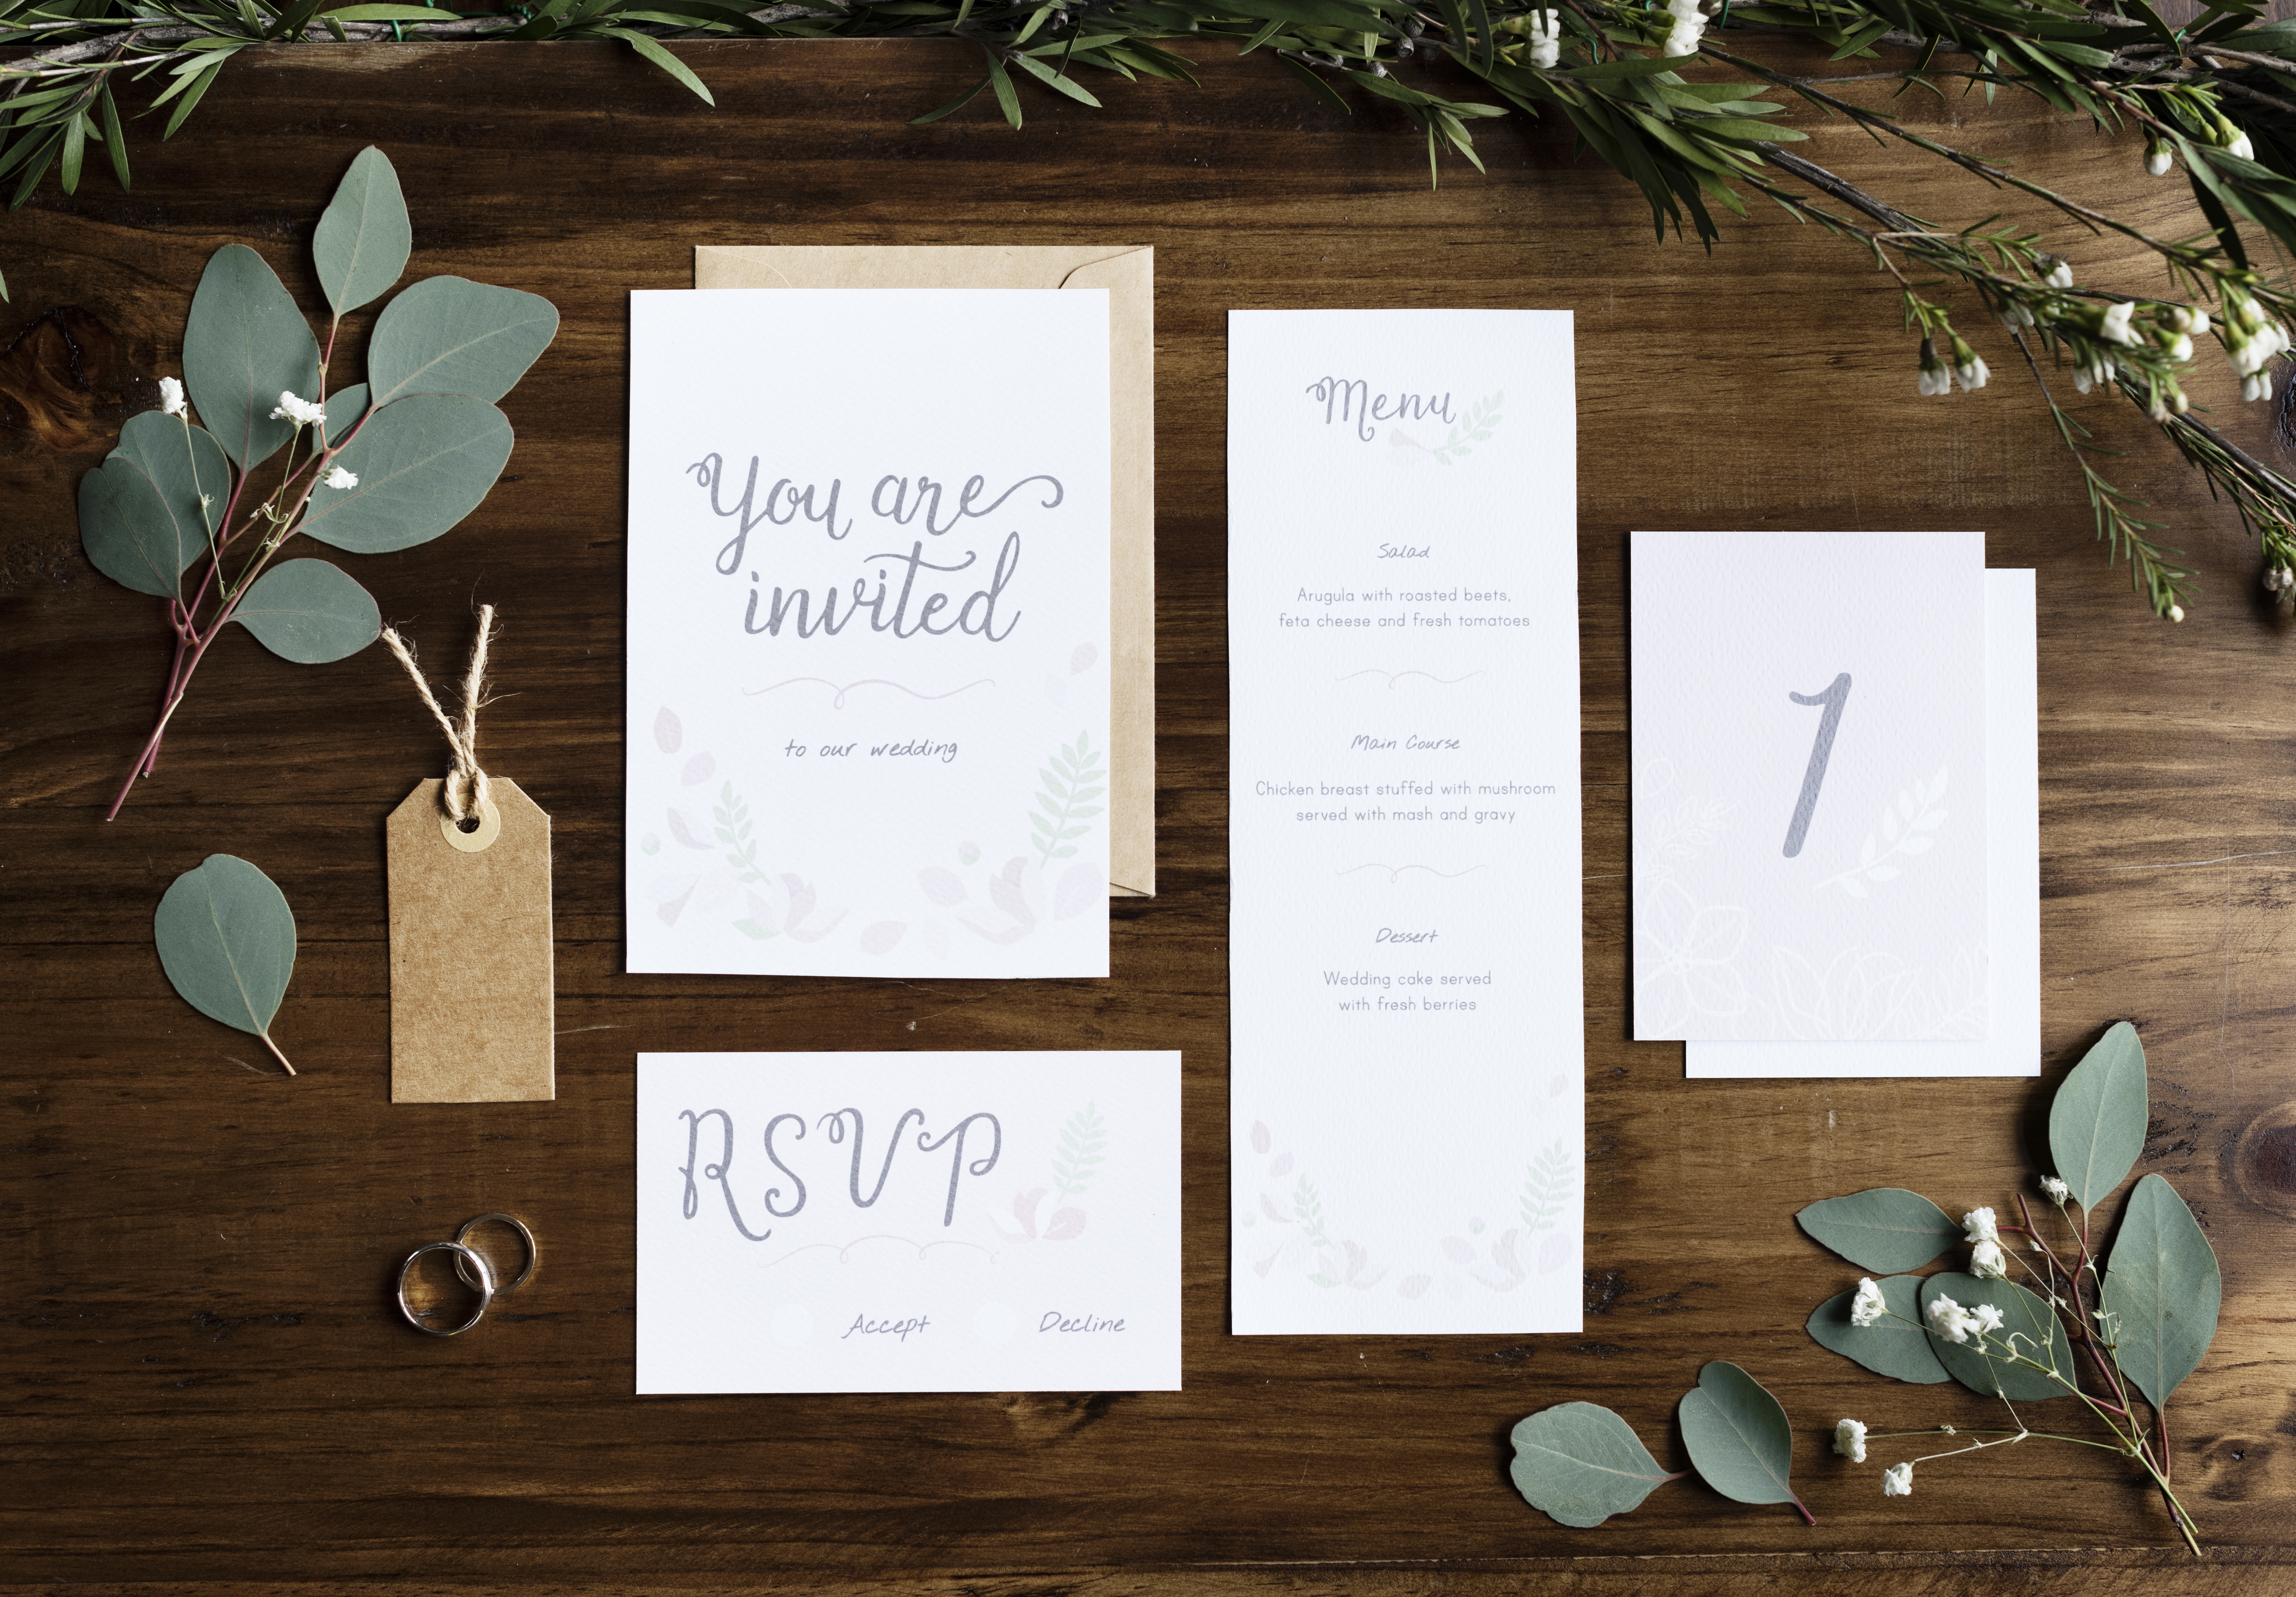 Ein Hochzeitseinladungs-Set | Quelle: Shutterstock